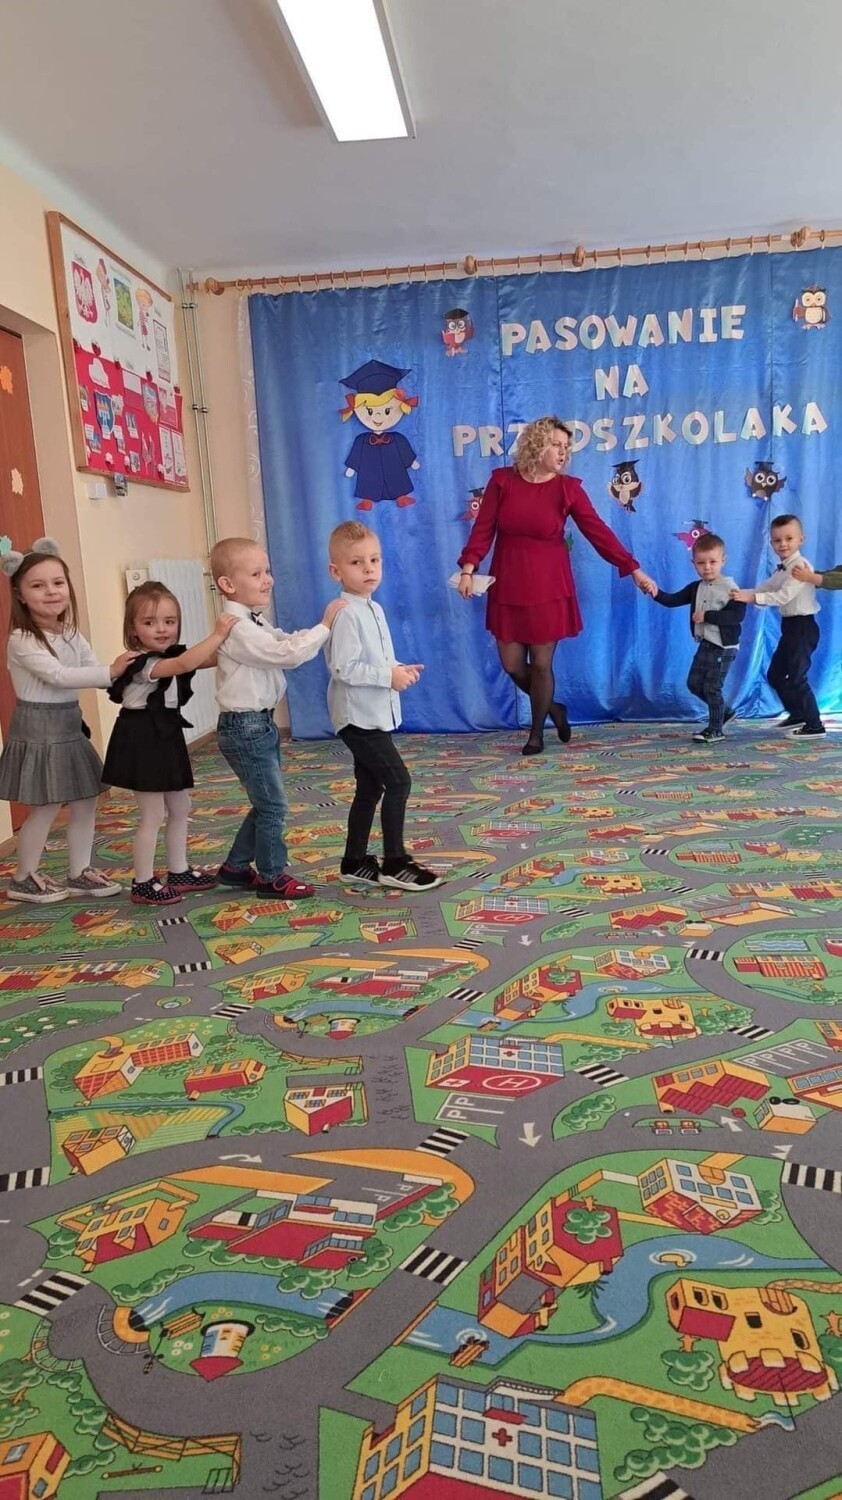 Wielki dzień dla przedszkolaków z Bajkowego Zakątka w Opatowie. Zobacz zdjęcia z uroczystości pasowania na przedszkolaka